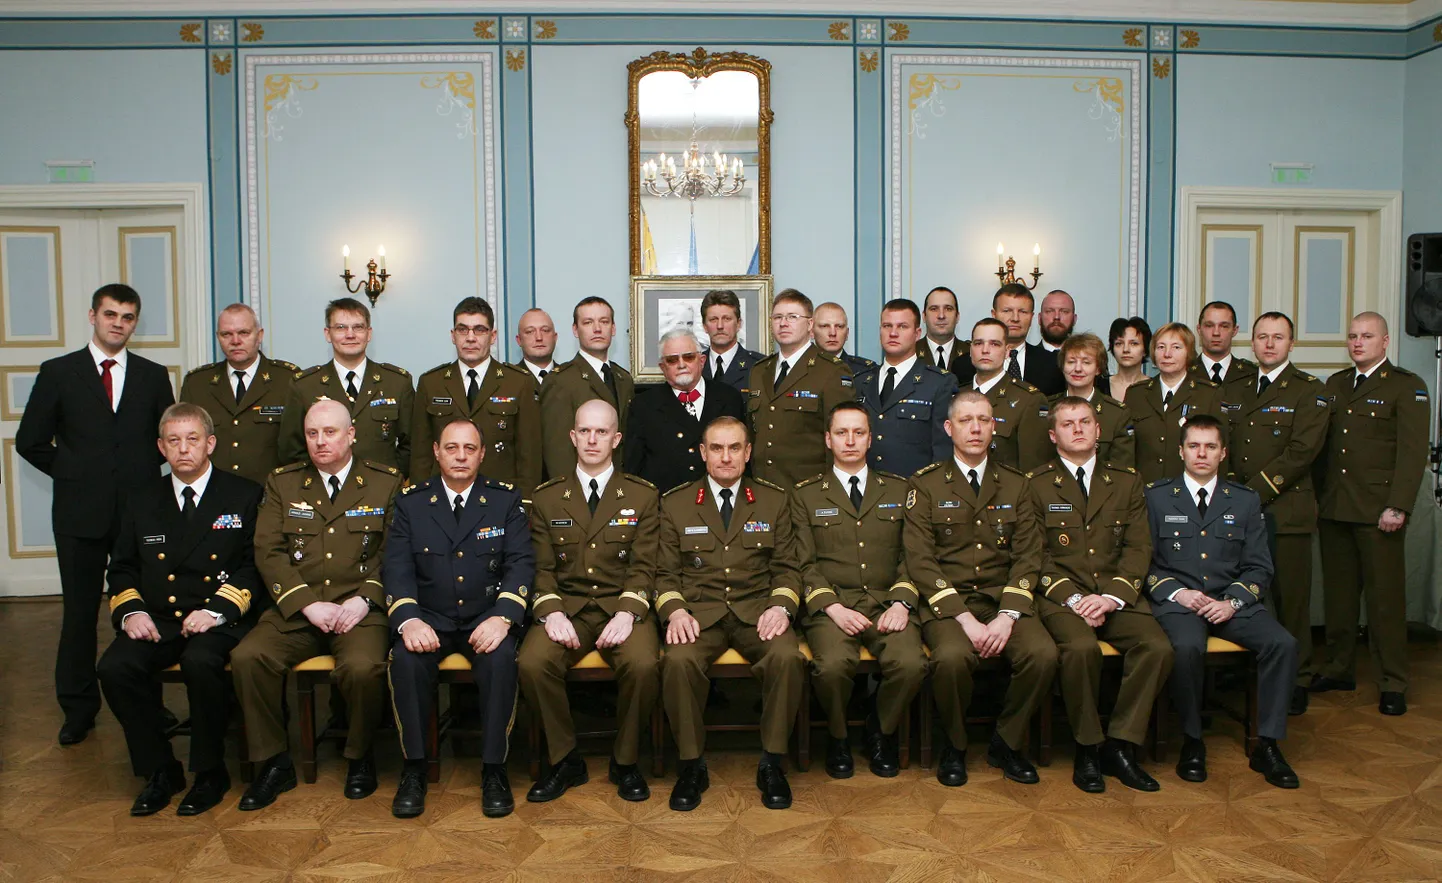 Kaitseväe juhataja koos vanemohvitseride ja kaitseväe teenetemärkide kavaleridega.